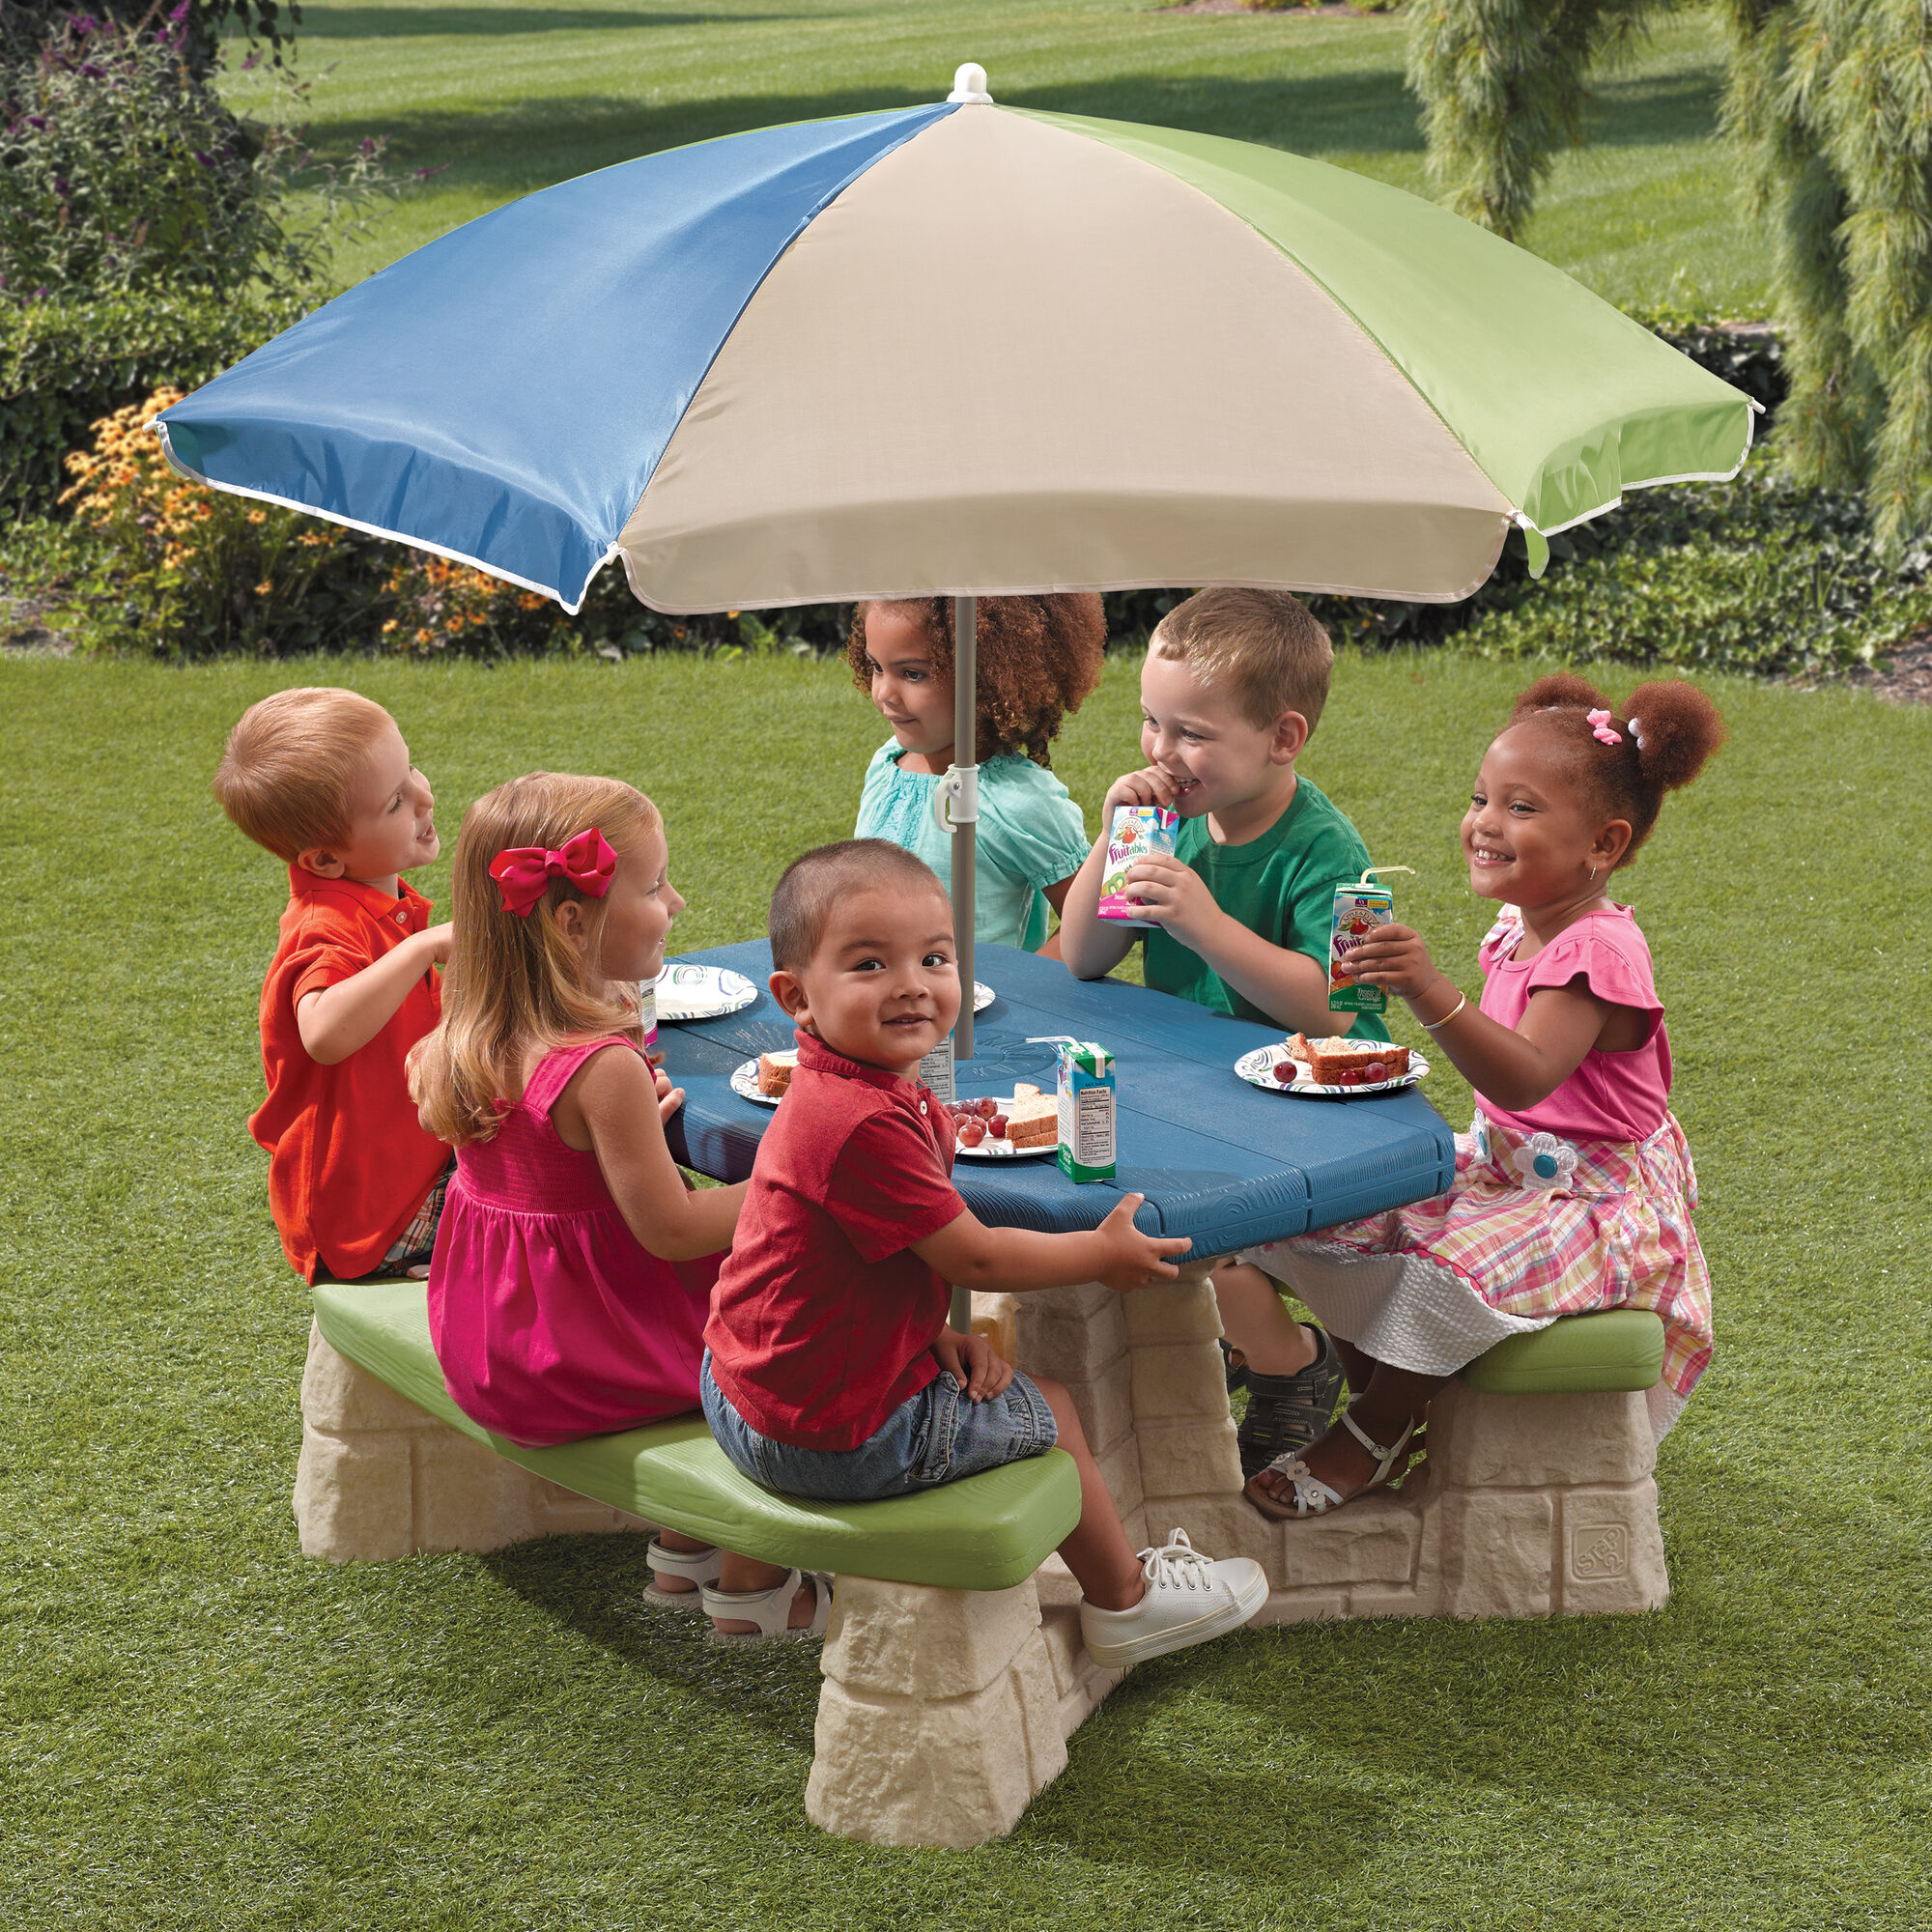 Step2 Naturally Playful Picknicktisch mit Sonnenschirm Grün und Blau